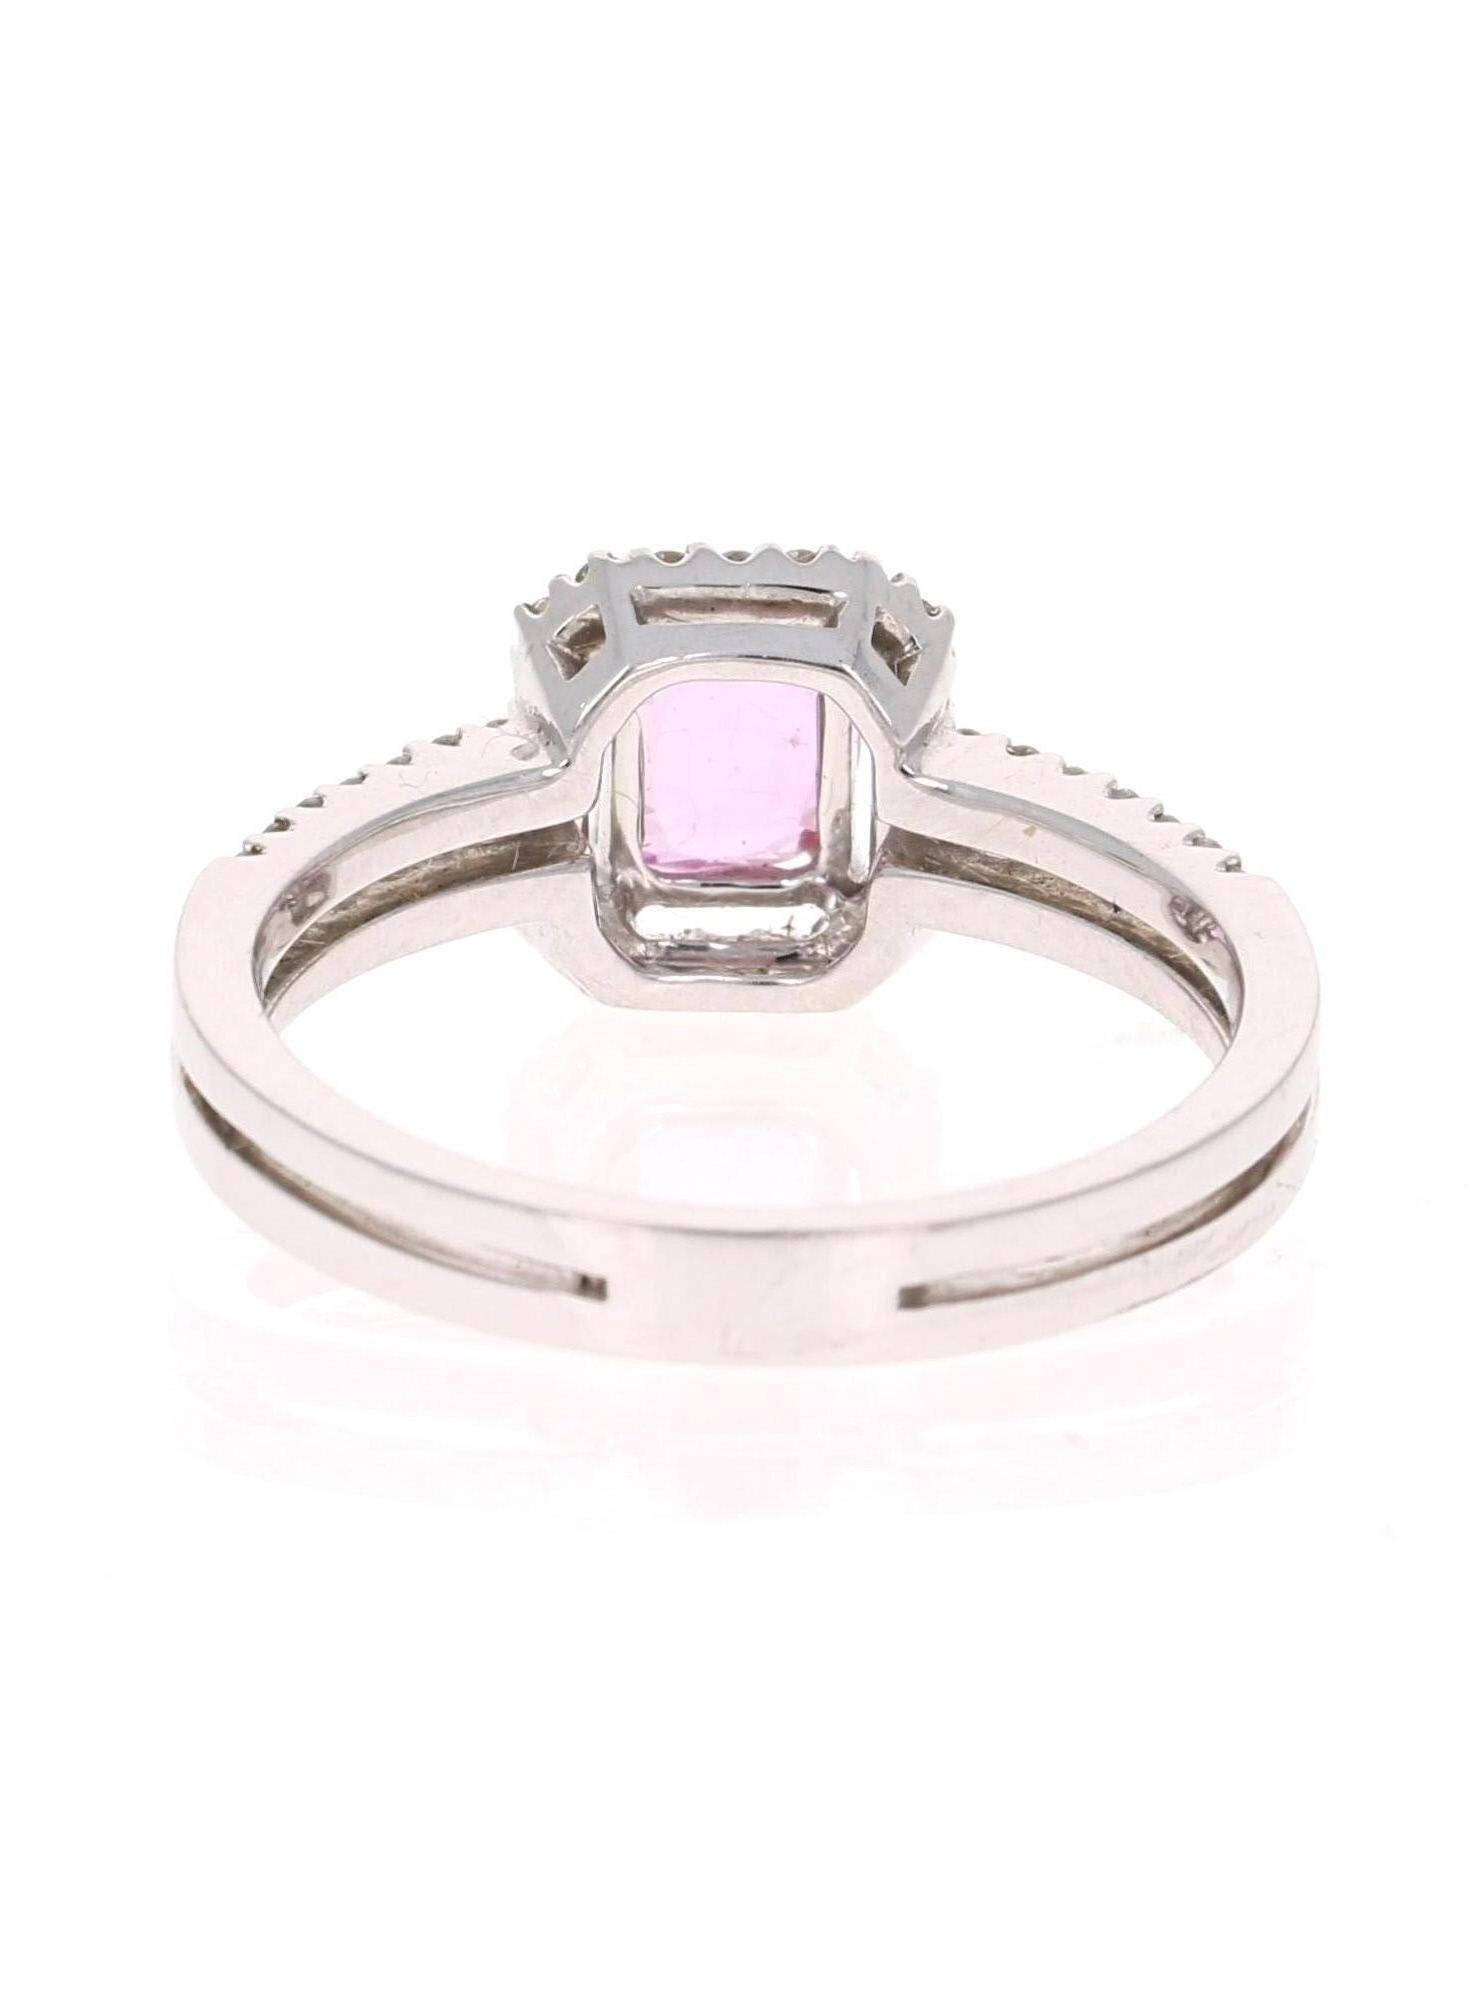 Women's 1.22 Carat GIA Certified Pink Sapphire Diamond Ring 14 Karat White Gold